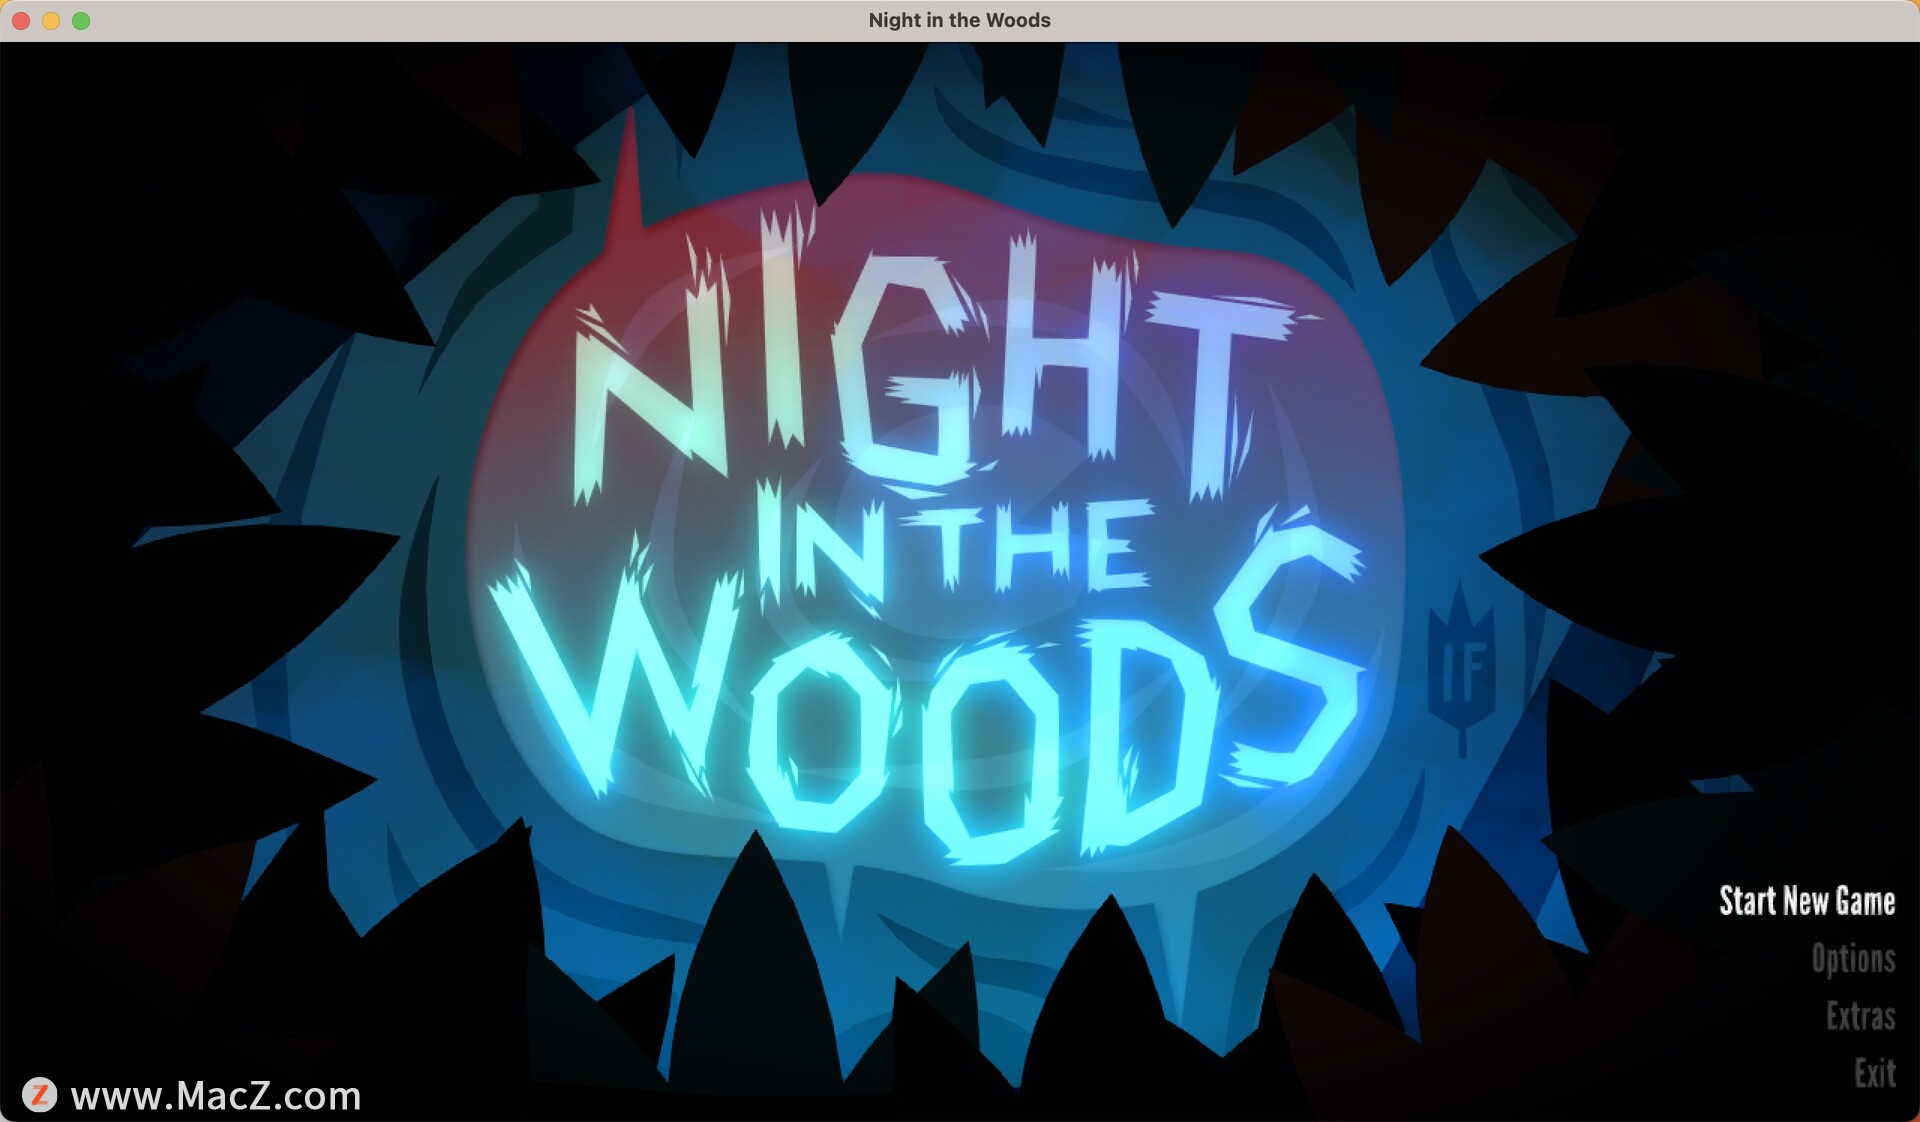 林中之夜:怪诞之秋 Night in the Woods: Weird Autumn Edition mac(探险游戏) 1.44 GB 英文软件